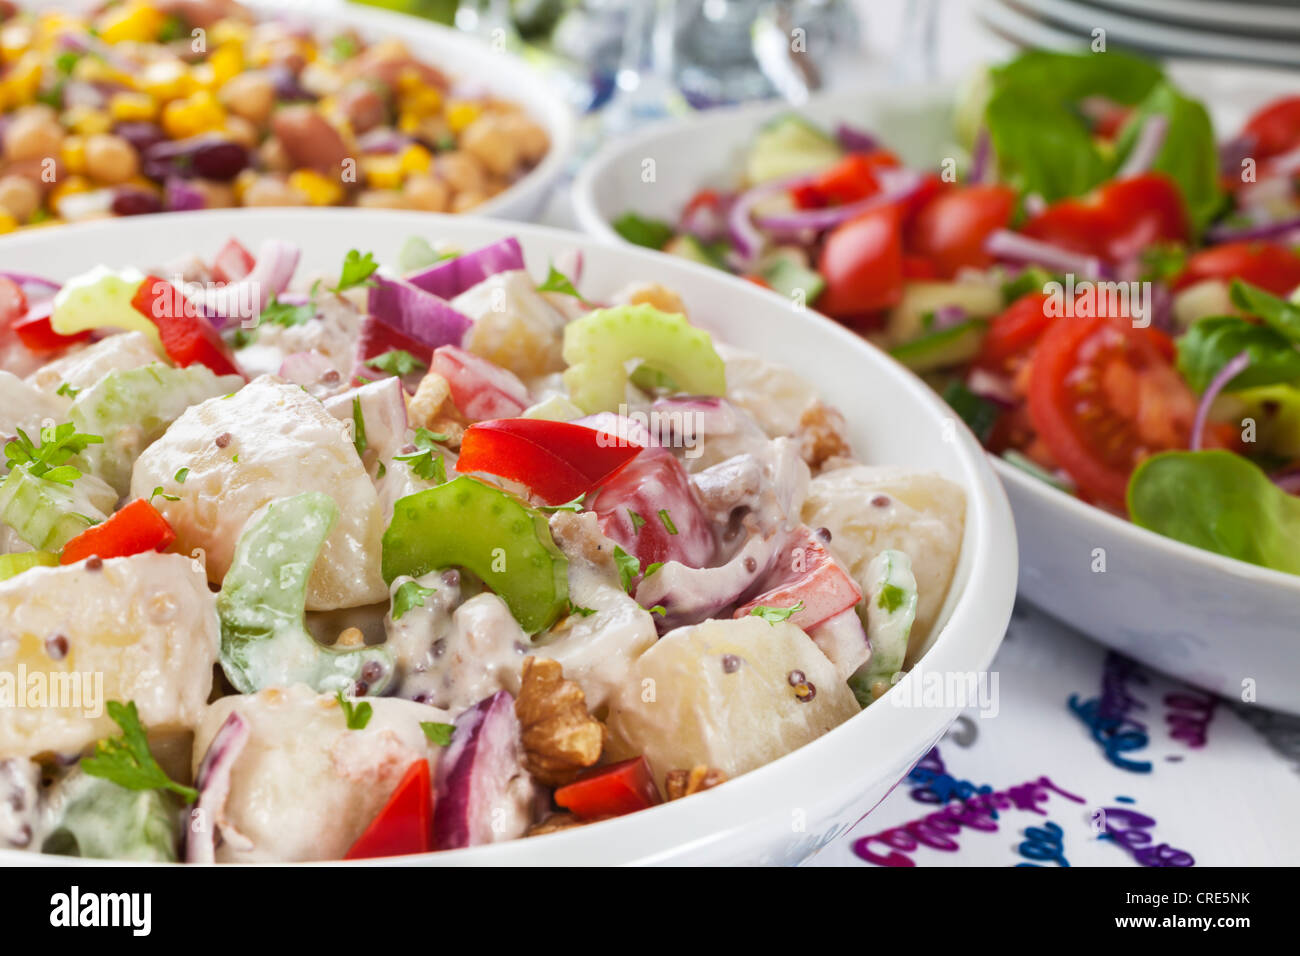 Un assortiment de salades sur une table de buffet, avec des décorations de fête arrosée sur table. Banque D'Images